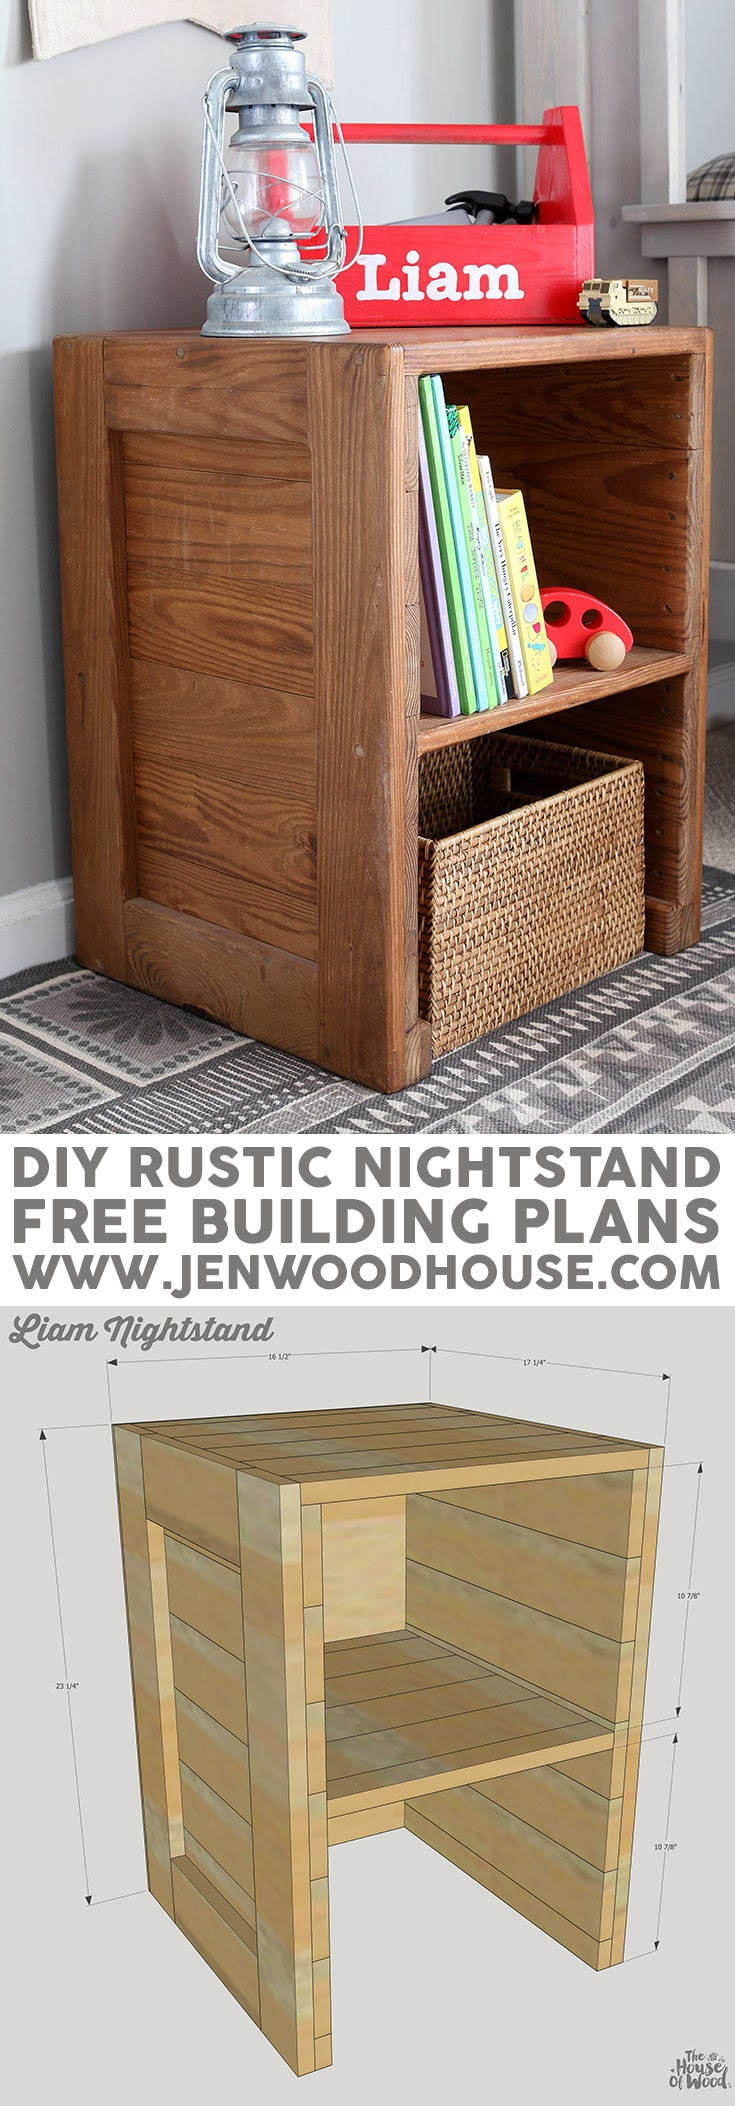 Free Plans: DIY Rustic Nightstand